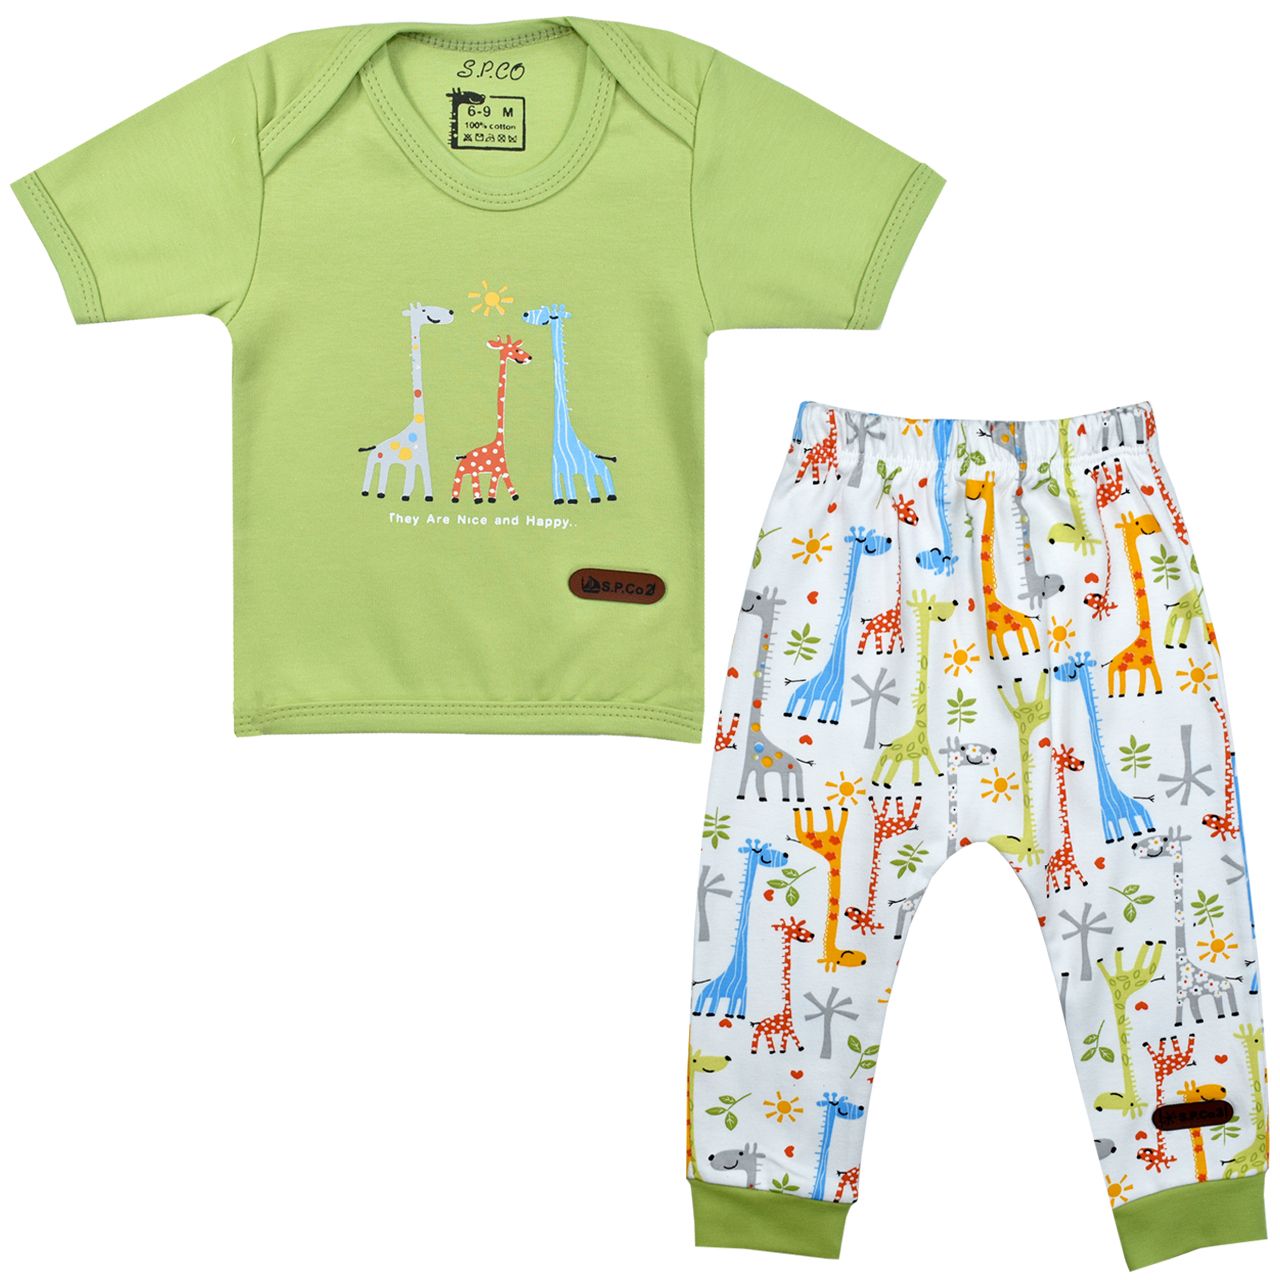 ست تی شرت آستین کوتاه و شلوار نوزادی اسپیکو مدل سانی کد 2